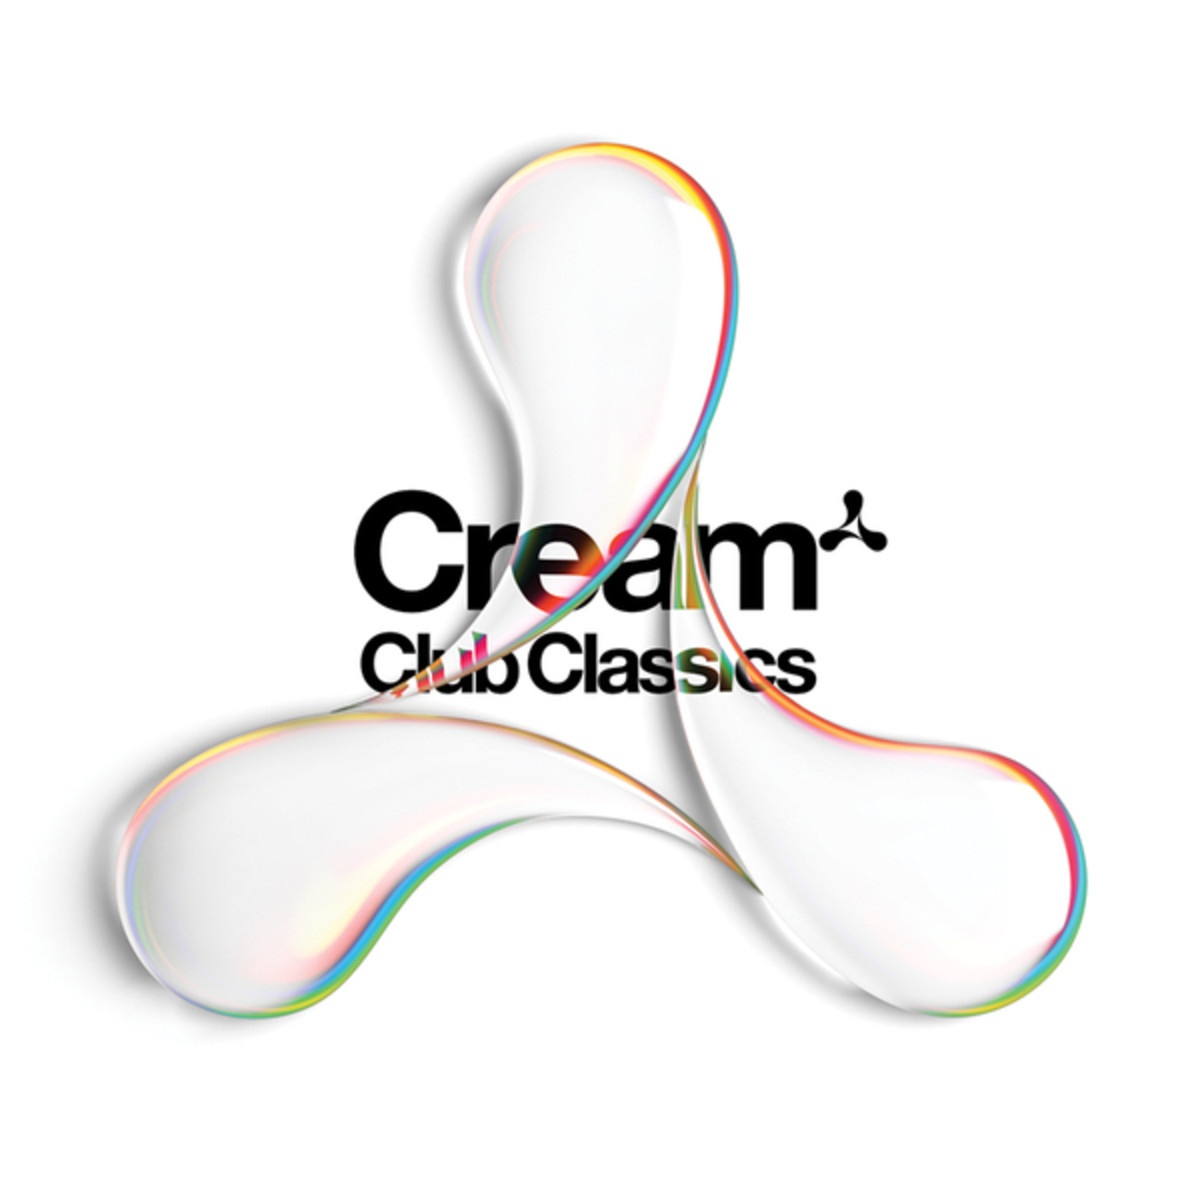 Cream Club Classics